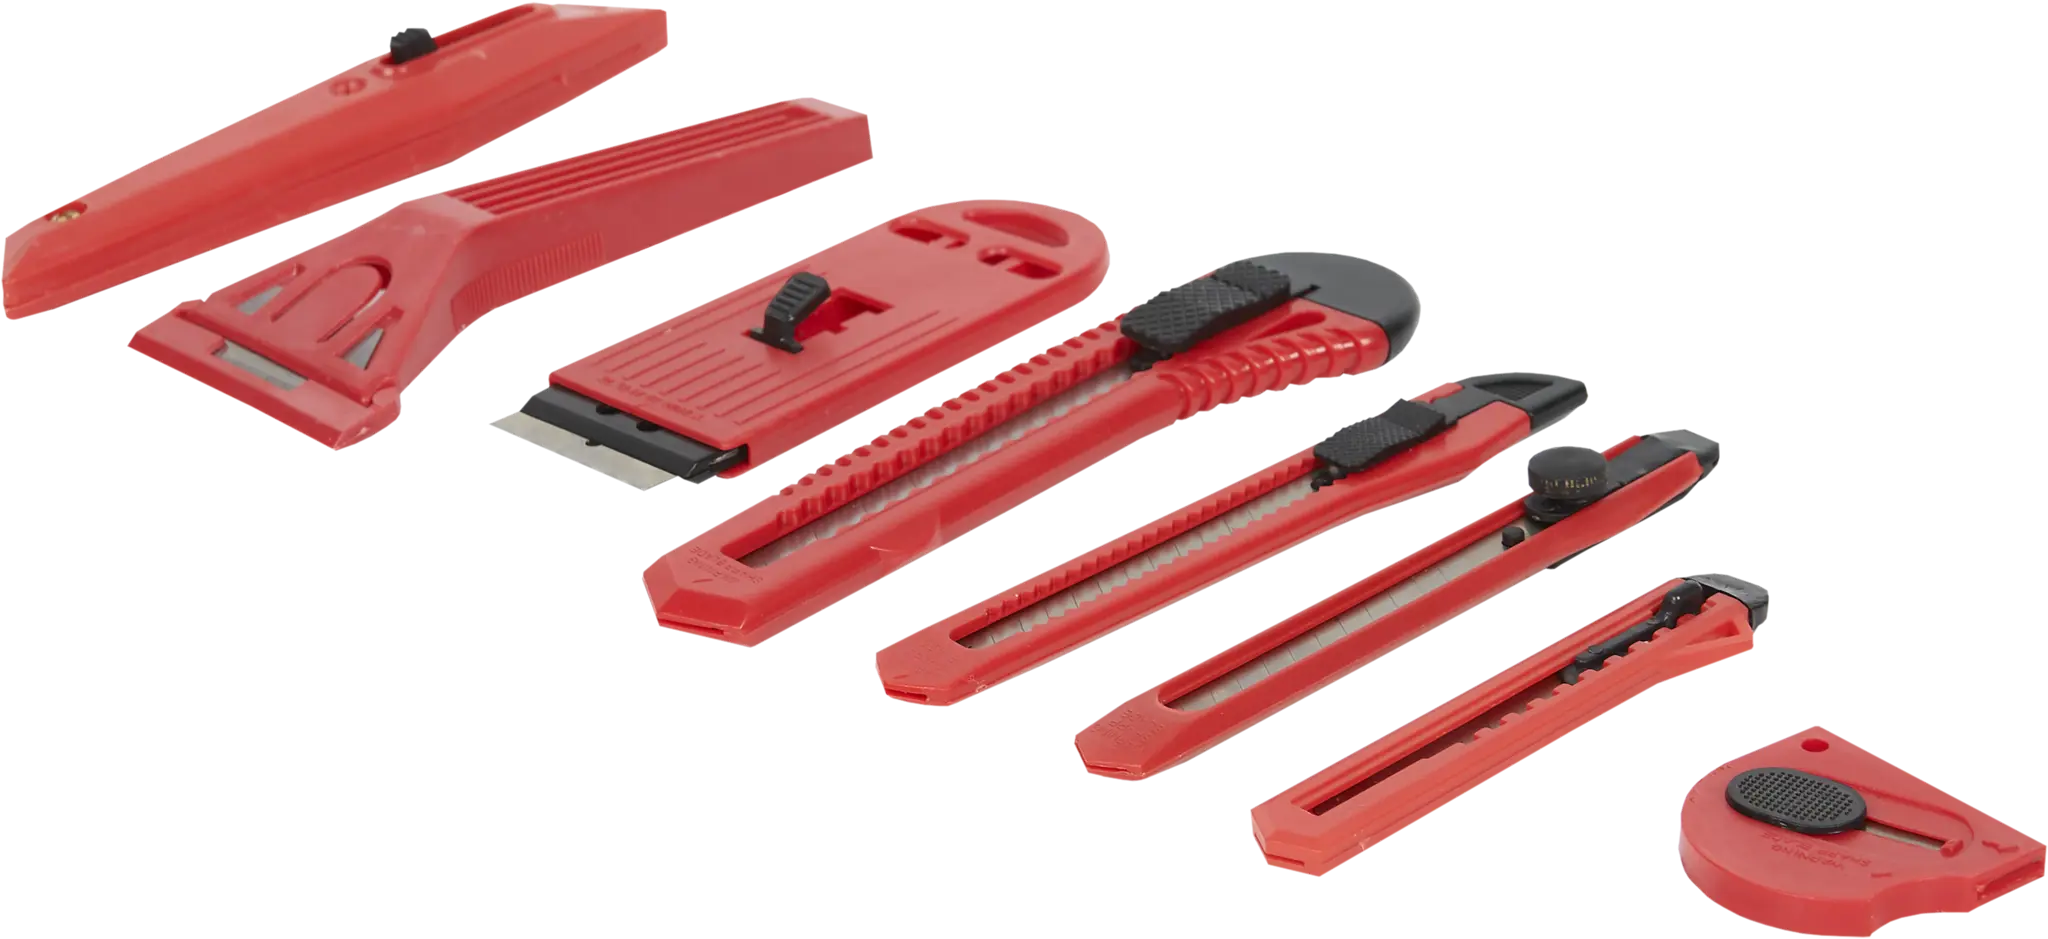 Набор ножей и скребков, 8 шт. набор скребков для чистки стеклокерамики eurokitchen